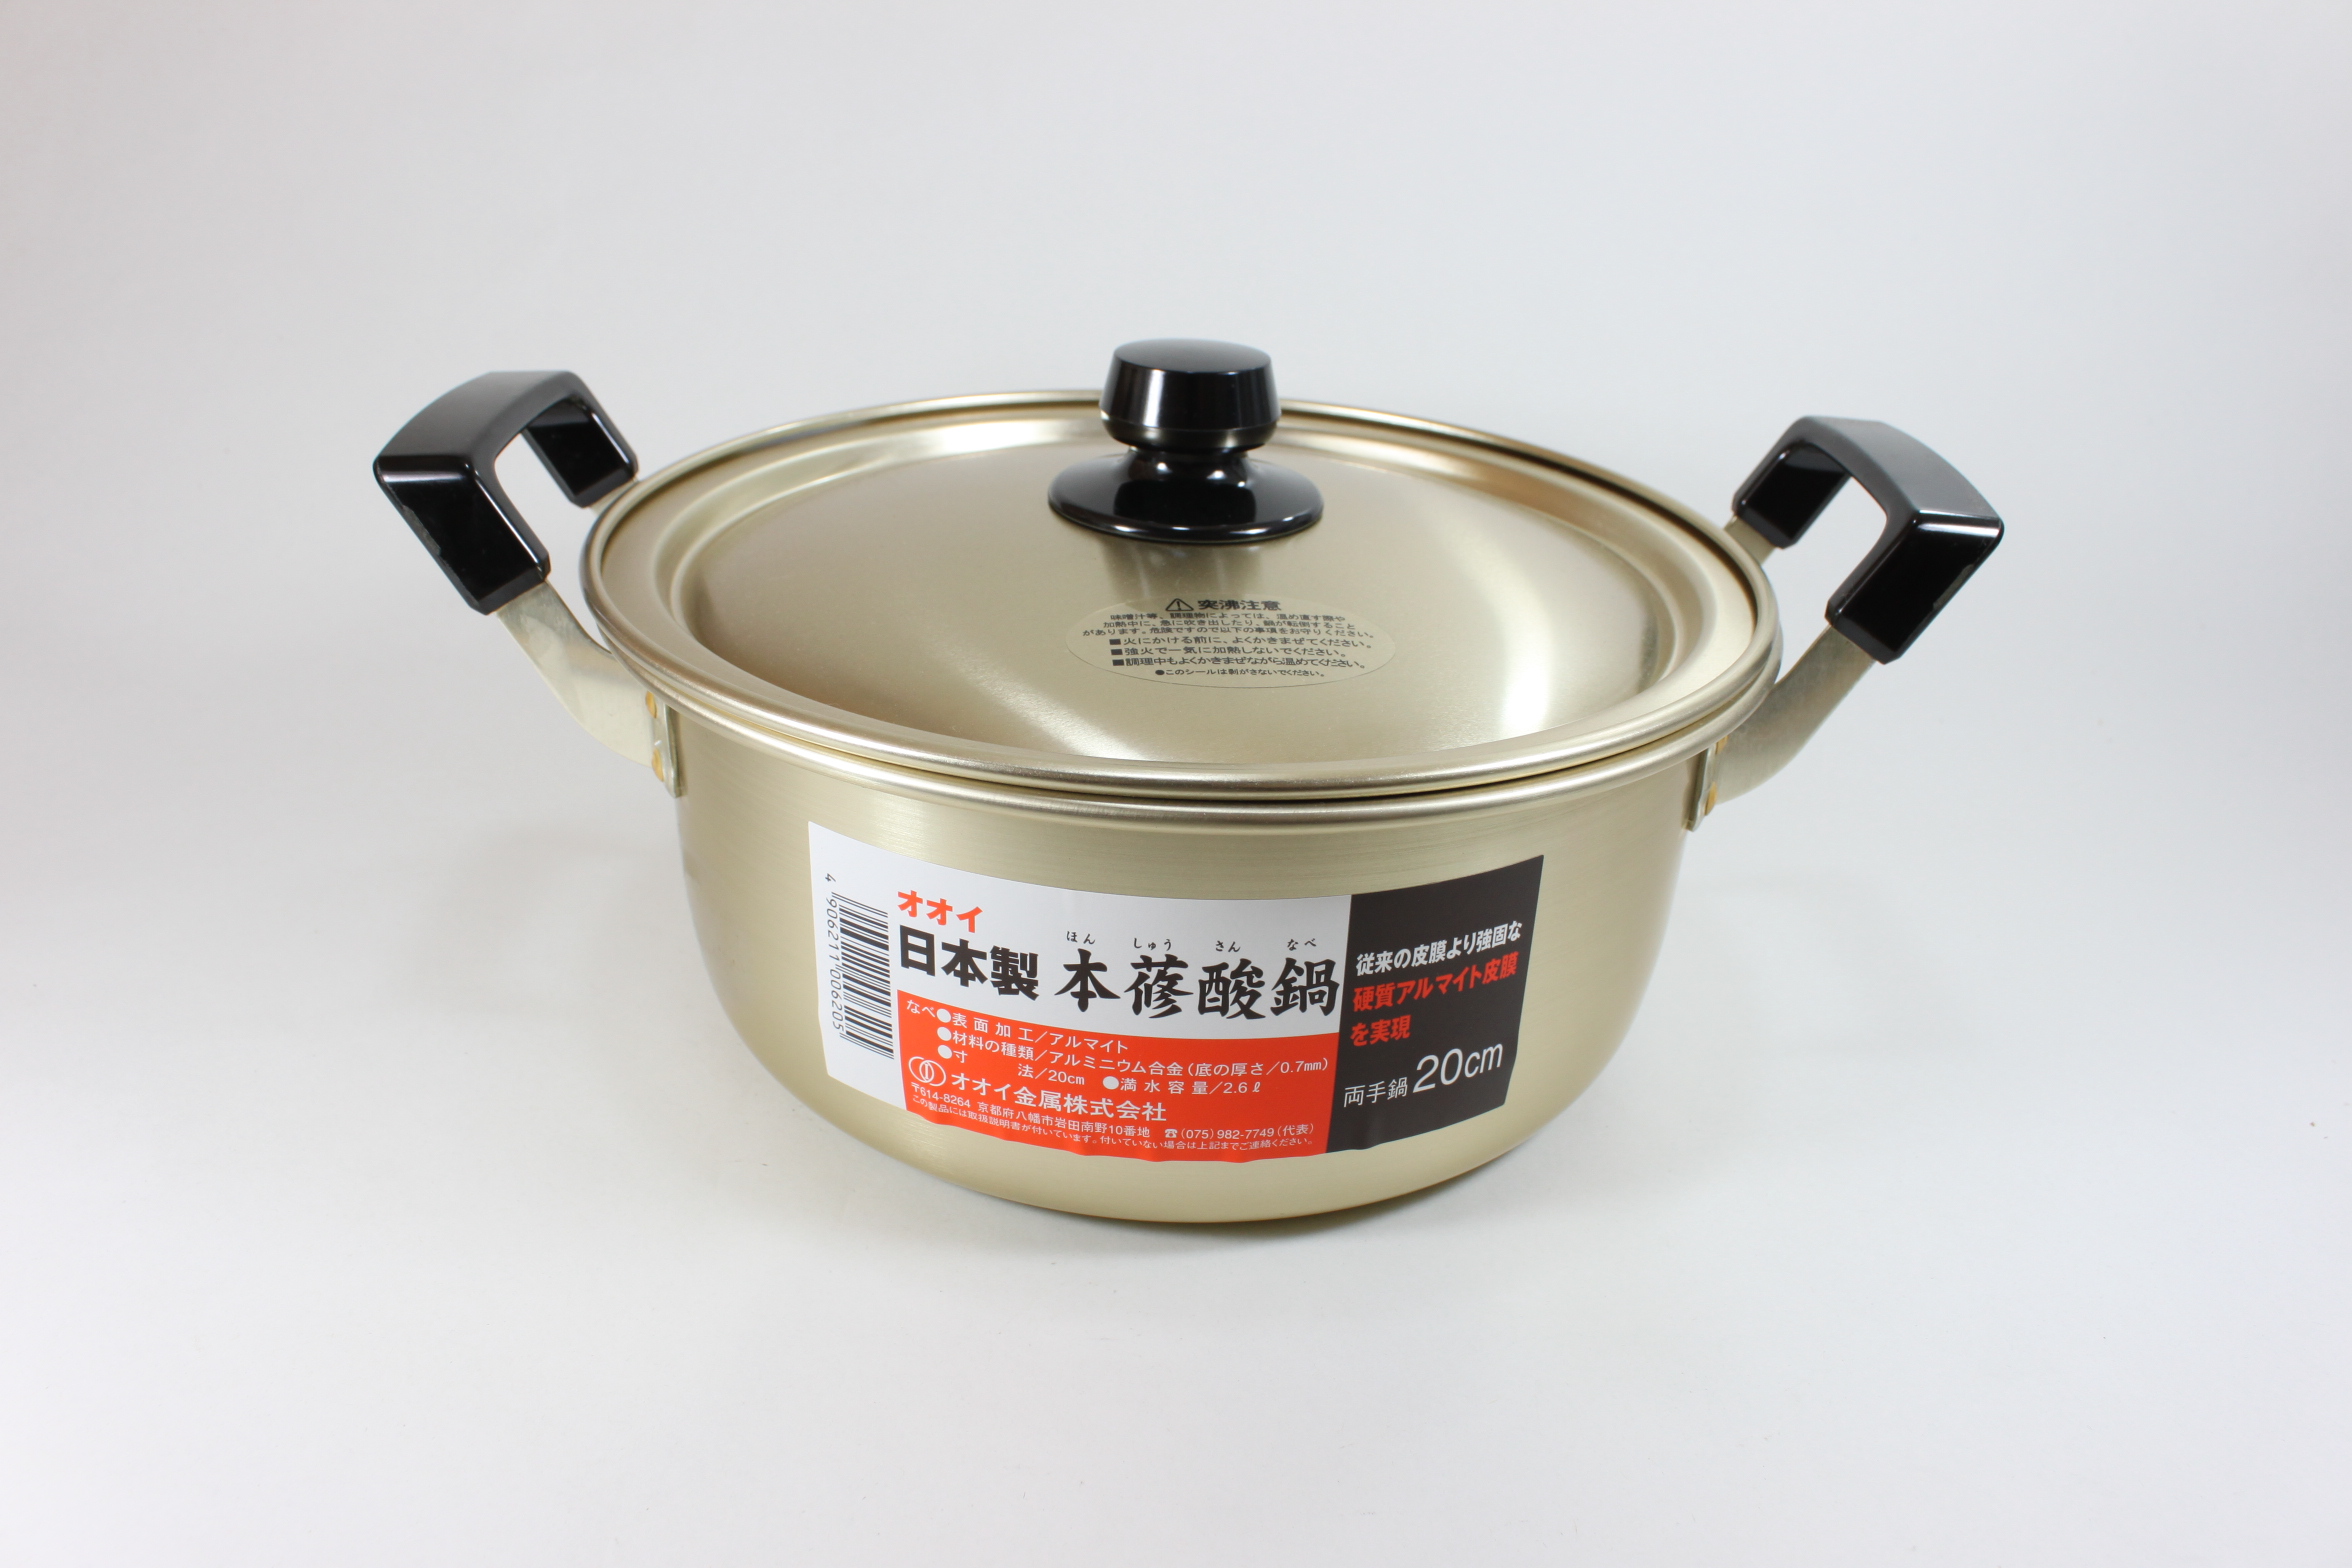 好きに 即納 しゅう酸 実用鍋 33cm 日本製 アカオ アルミ 両手鍋 アカオアルミ 両手なべ 鍋 大型鍋 料理鍋 アルマイト シュウ酸 業務用  ゴールド